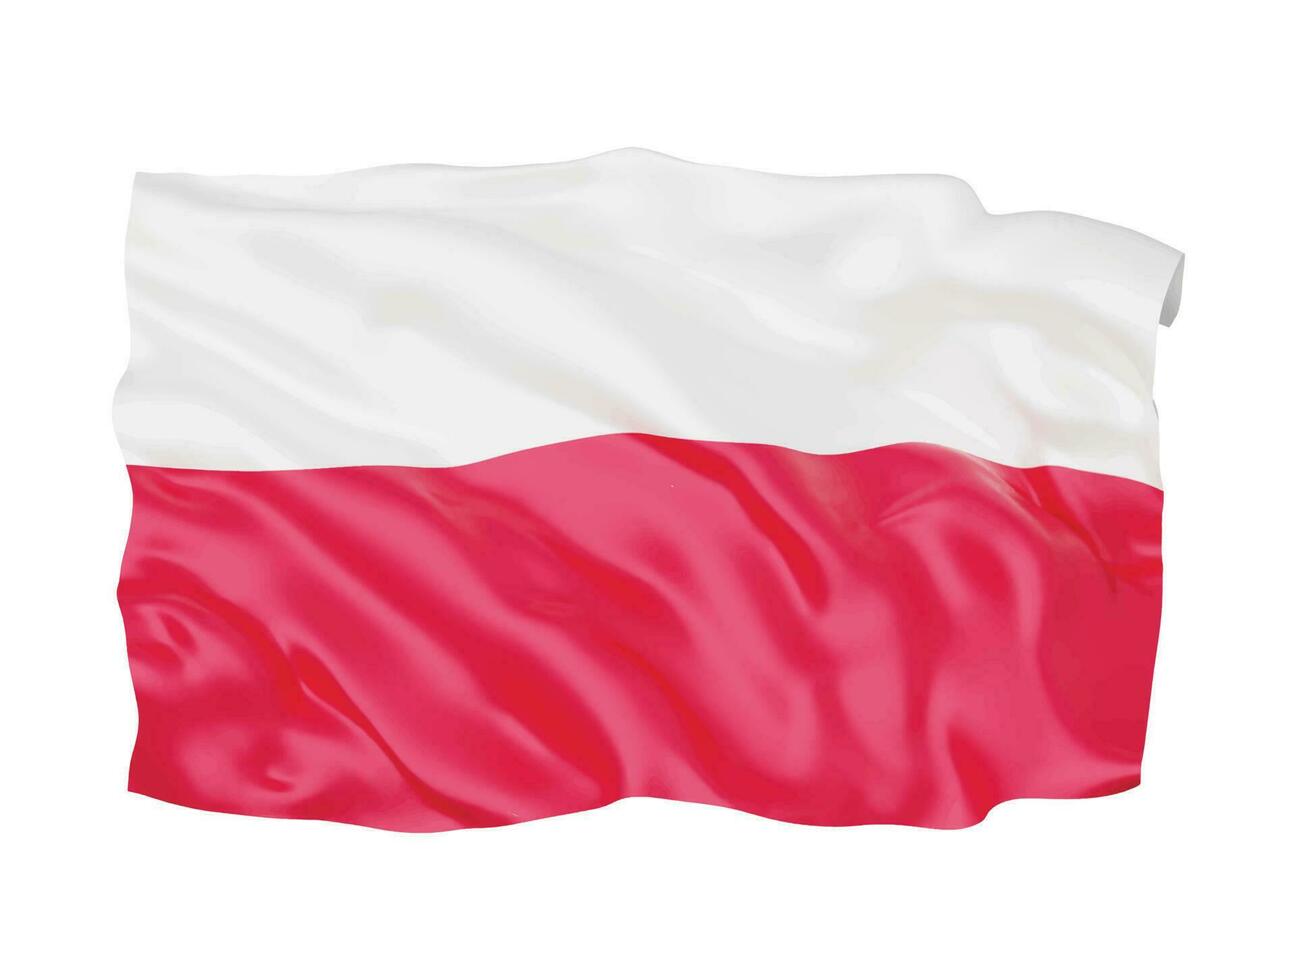 símbolo de sinal nacional da bandeira da polônia 3d vetor